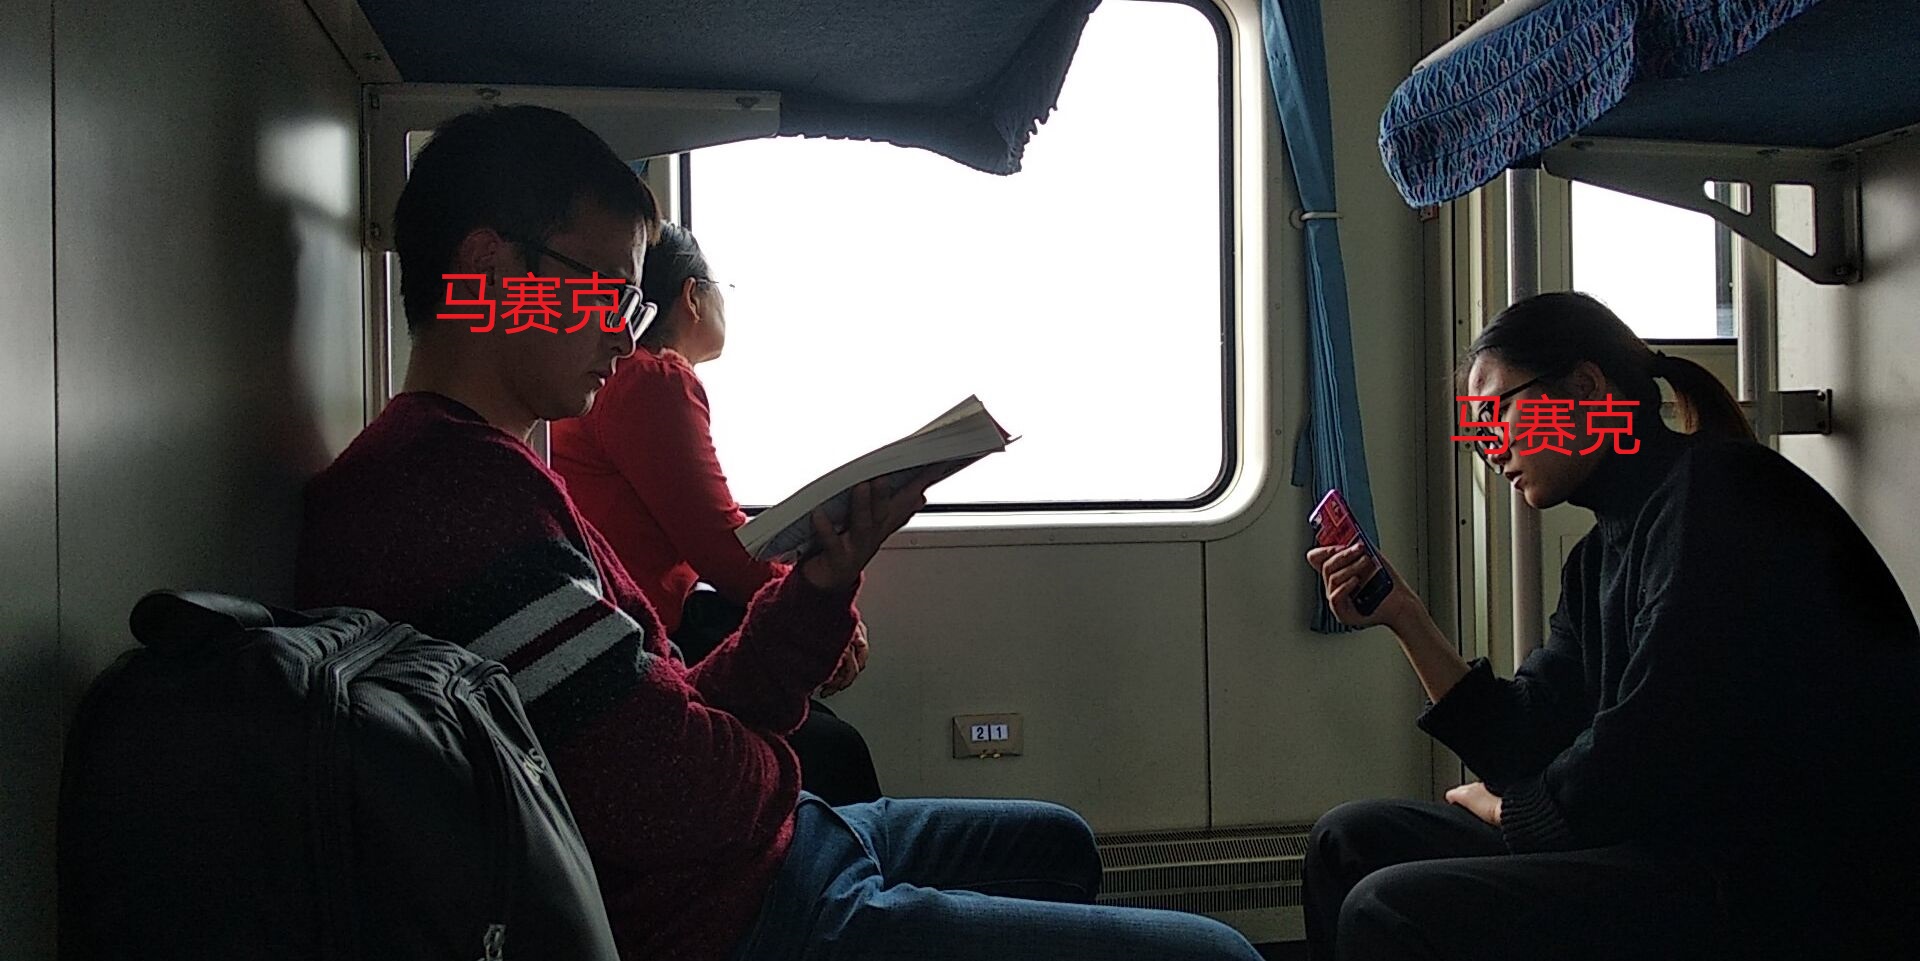 火车上看书的人